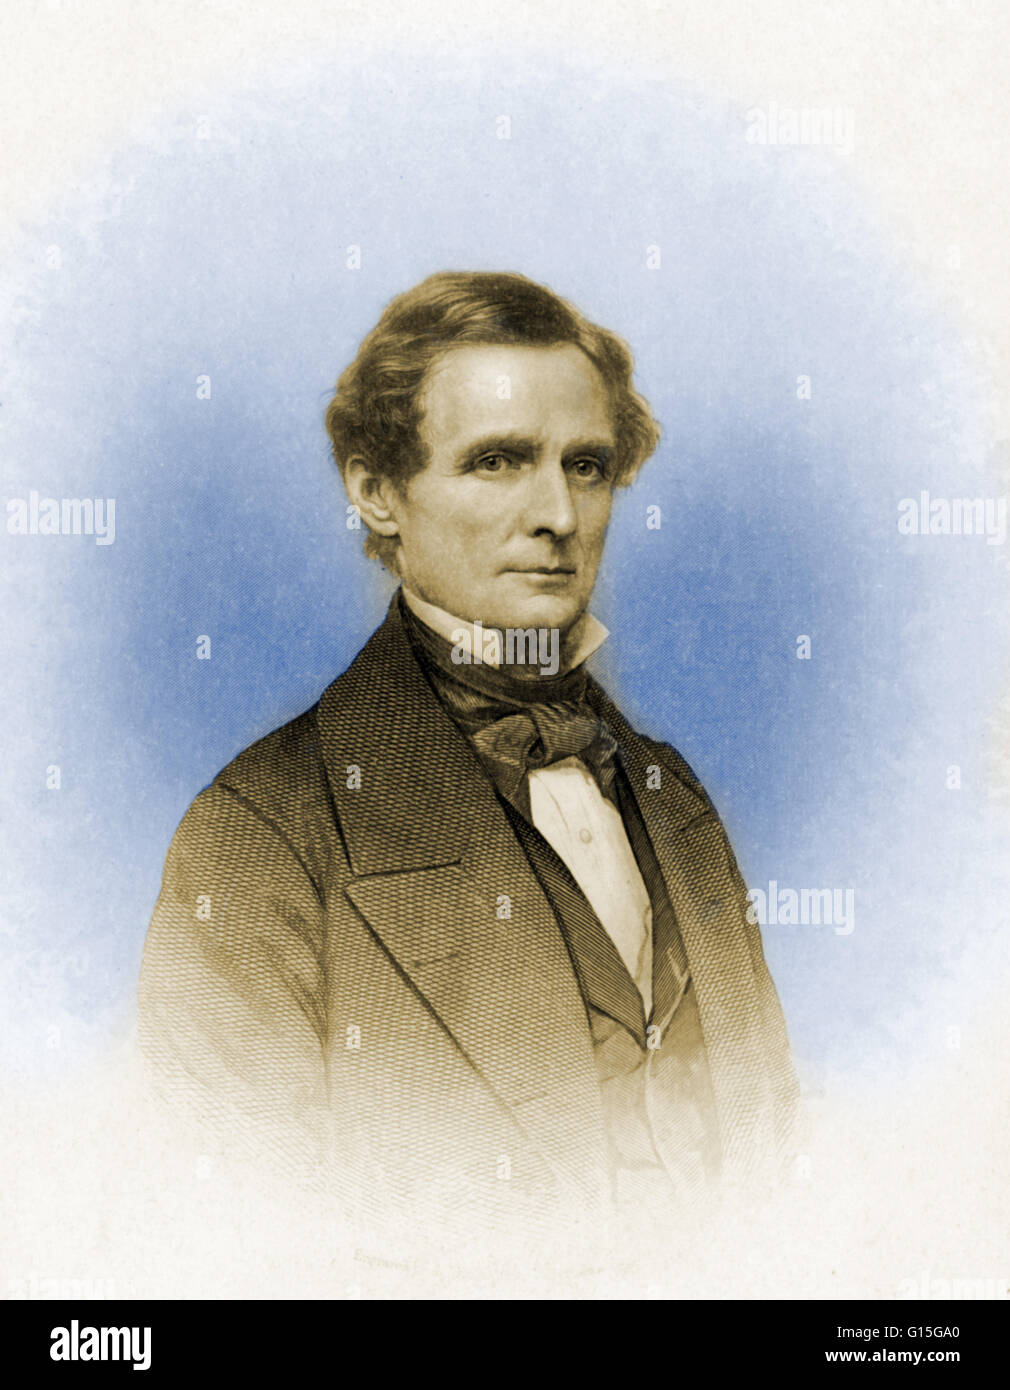 Jefferson Finis 'Jeff' Davis (1808-1889) était un homme d'État américain et chef de la Confédération durant la guerre civile américaine, agissant comme président pour sa brève histoire. Davis est diplômé de West Point et a combattu dans la guerre américano-mexicaine comme un colonel Banque D'Images